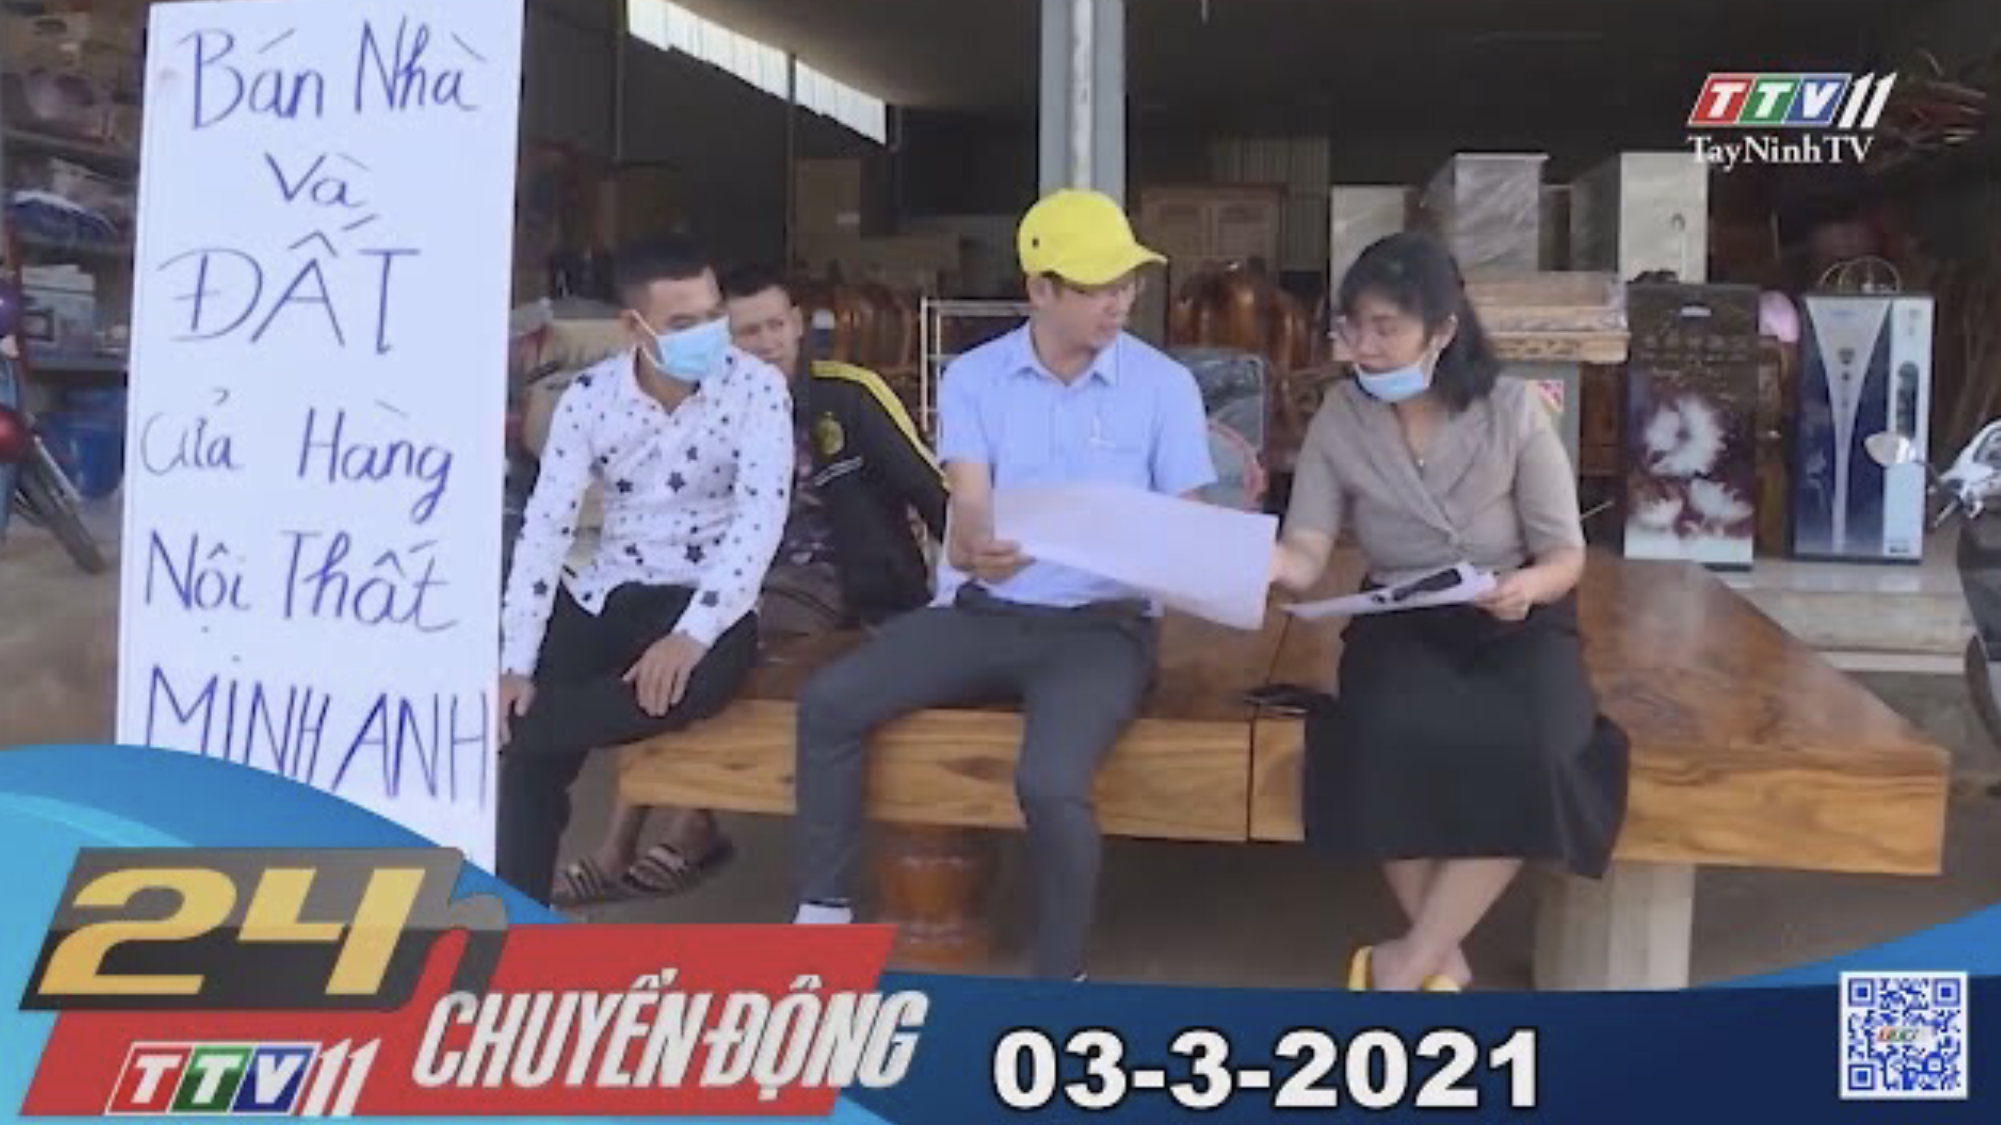 24h Chuyển động 03-3-2021 | Tin tức hôm nay | TayNinhTV